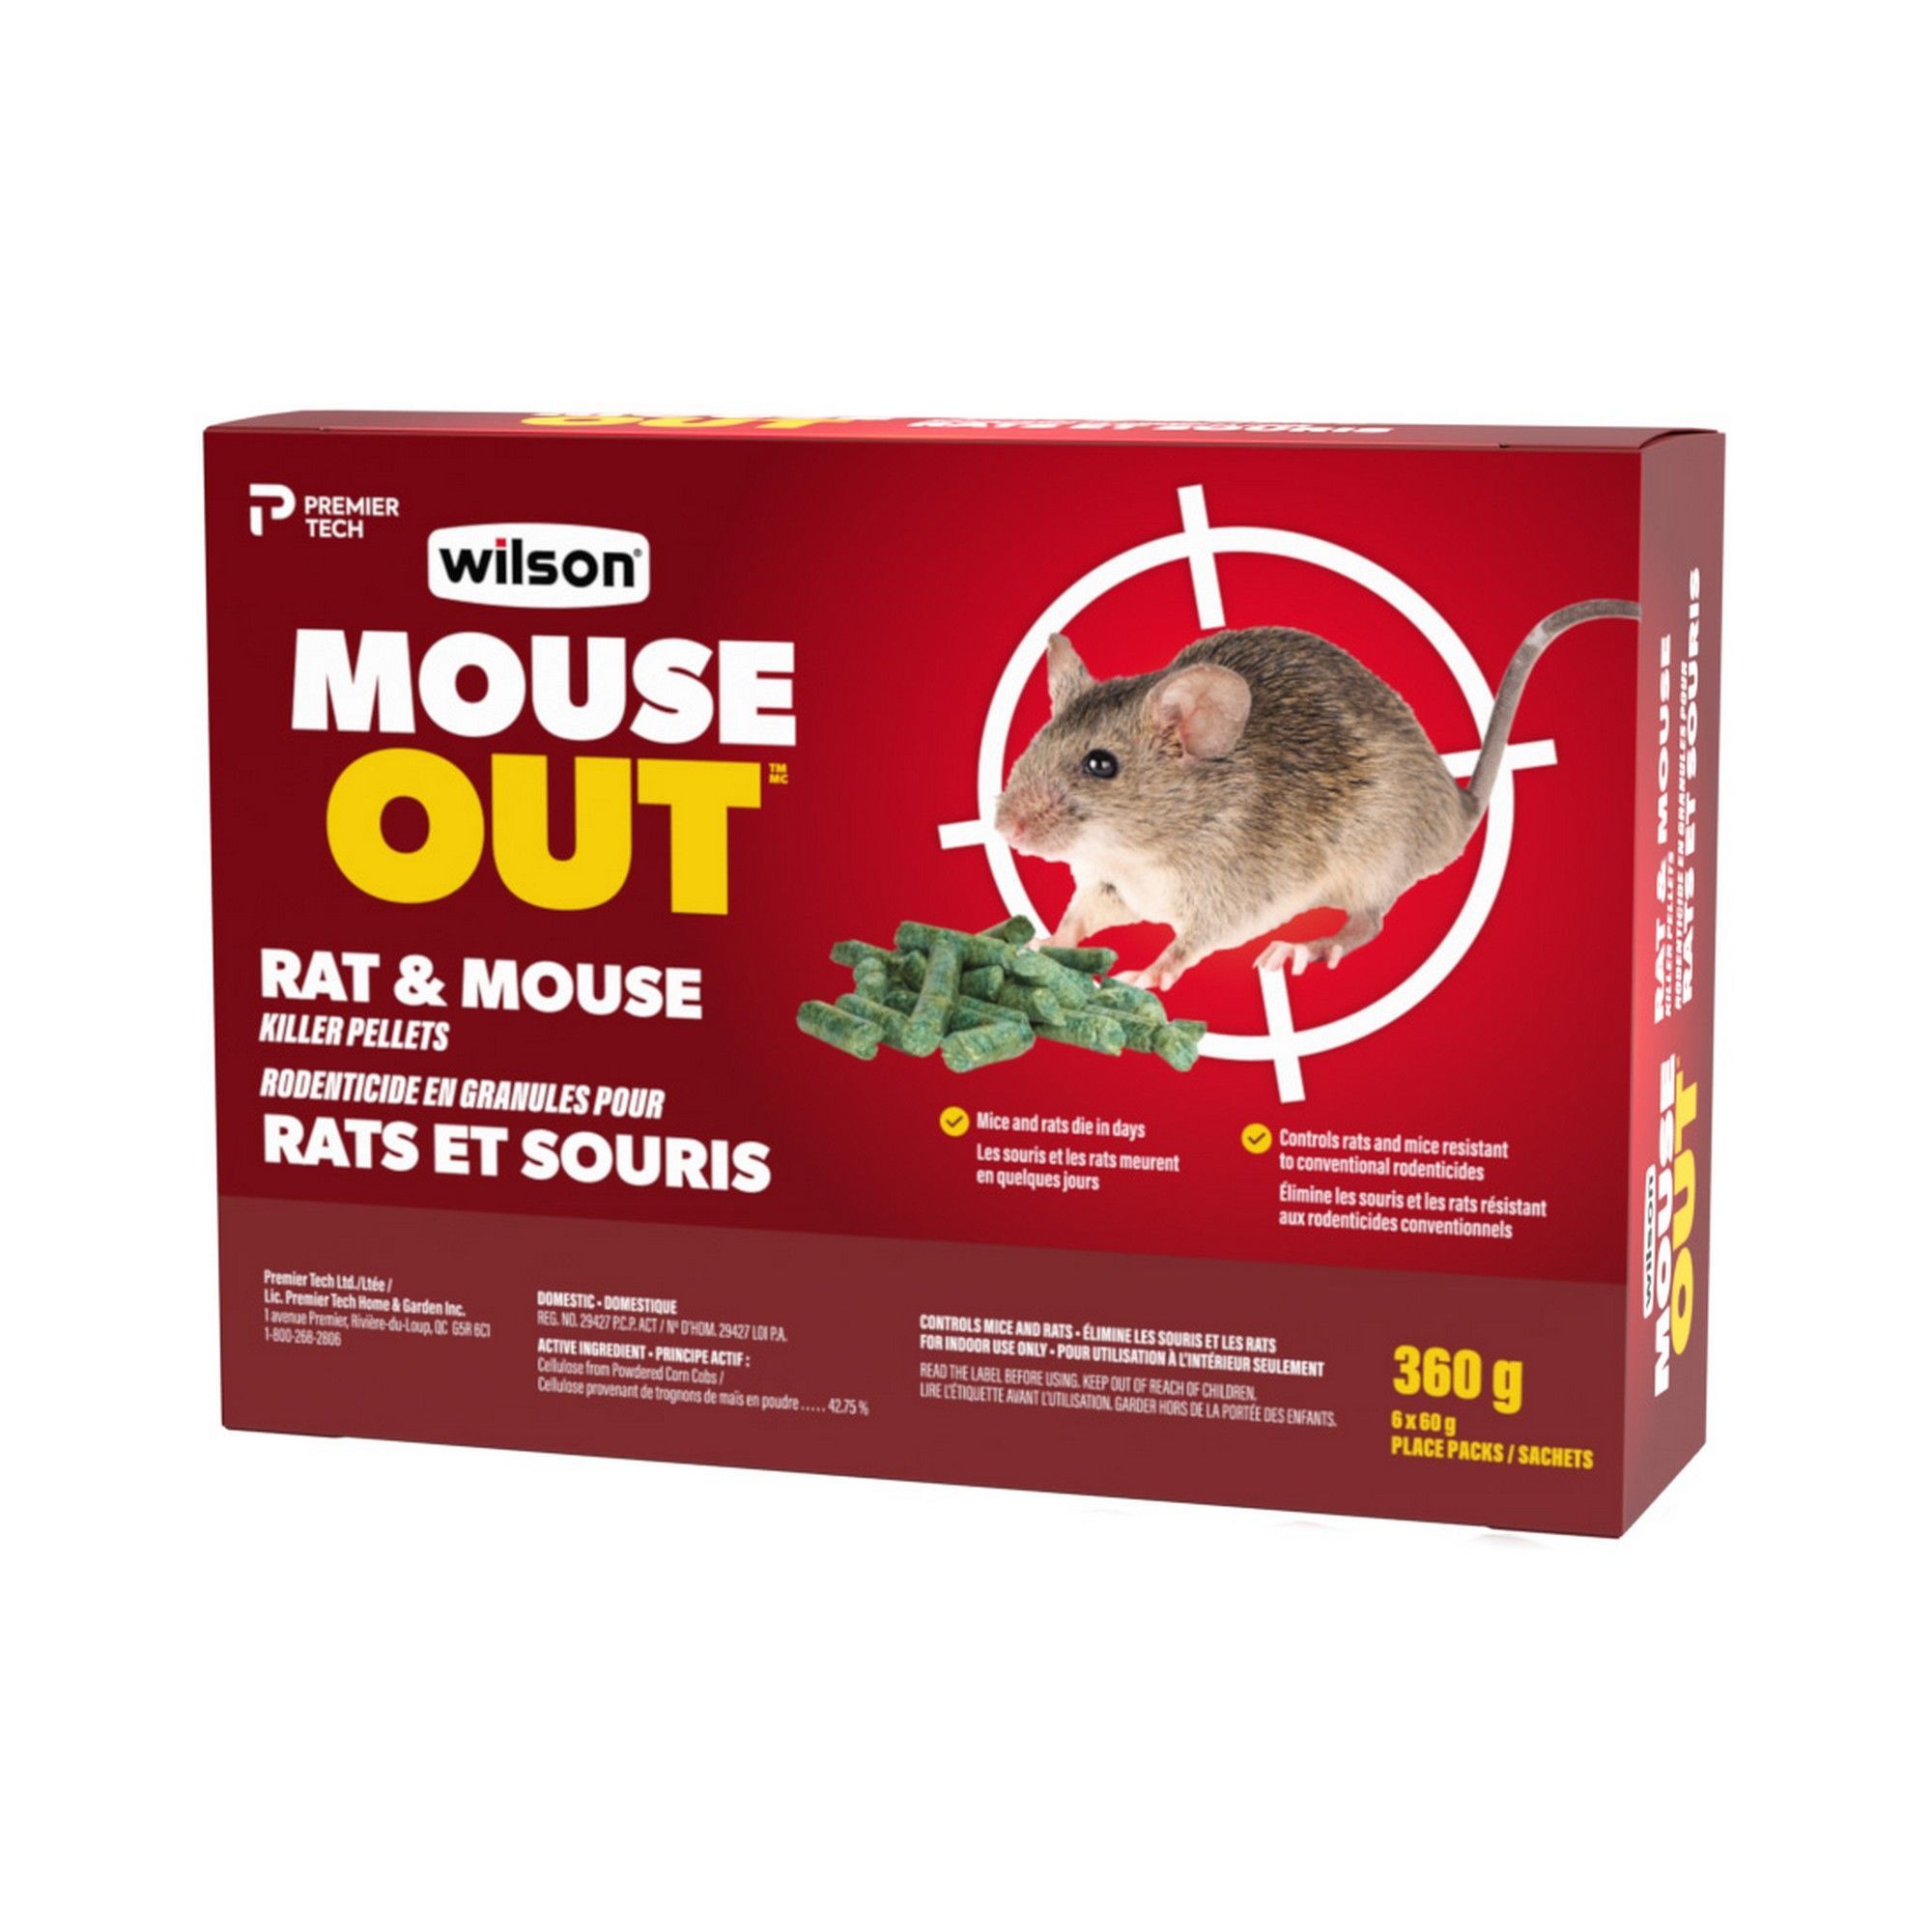 EMEROD 5 KG, poudre répulsive anti souris, rat, fouine pour comble